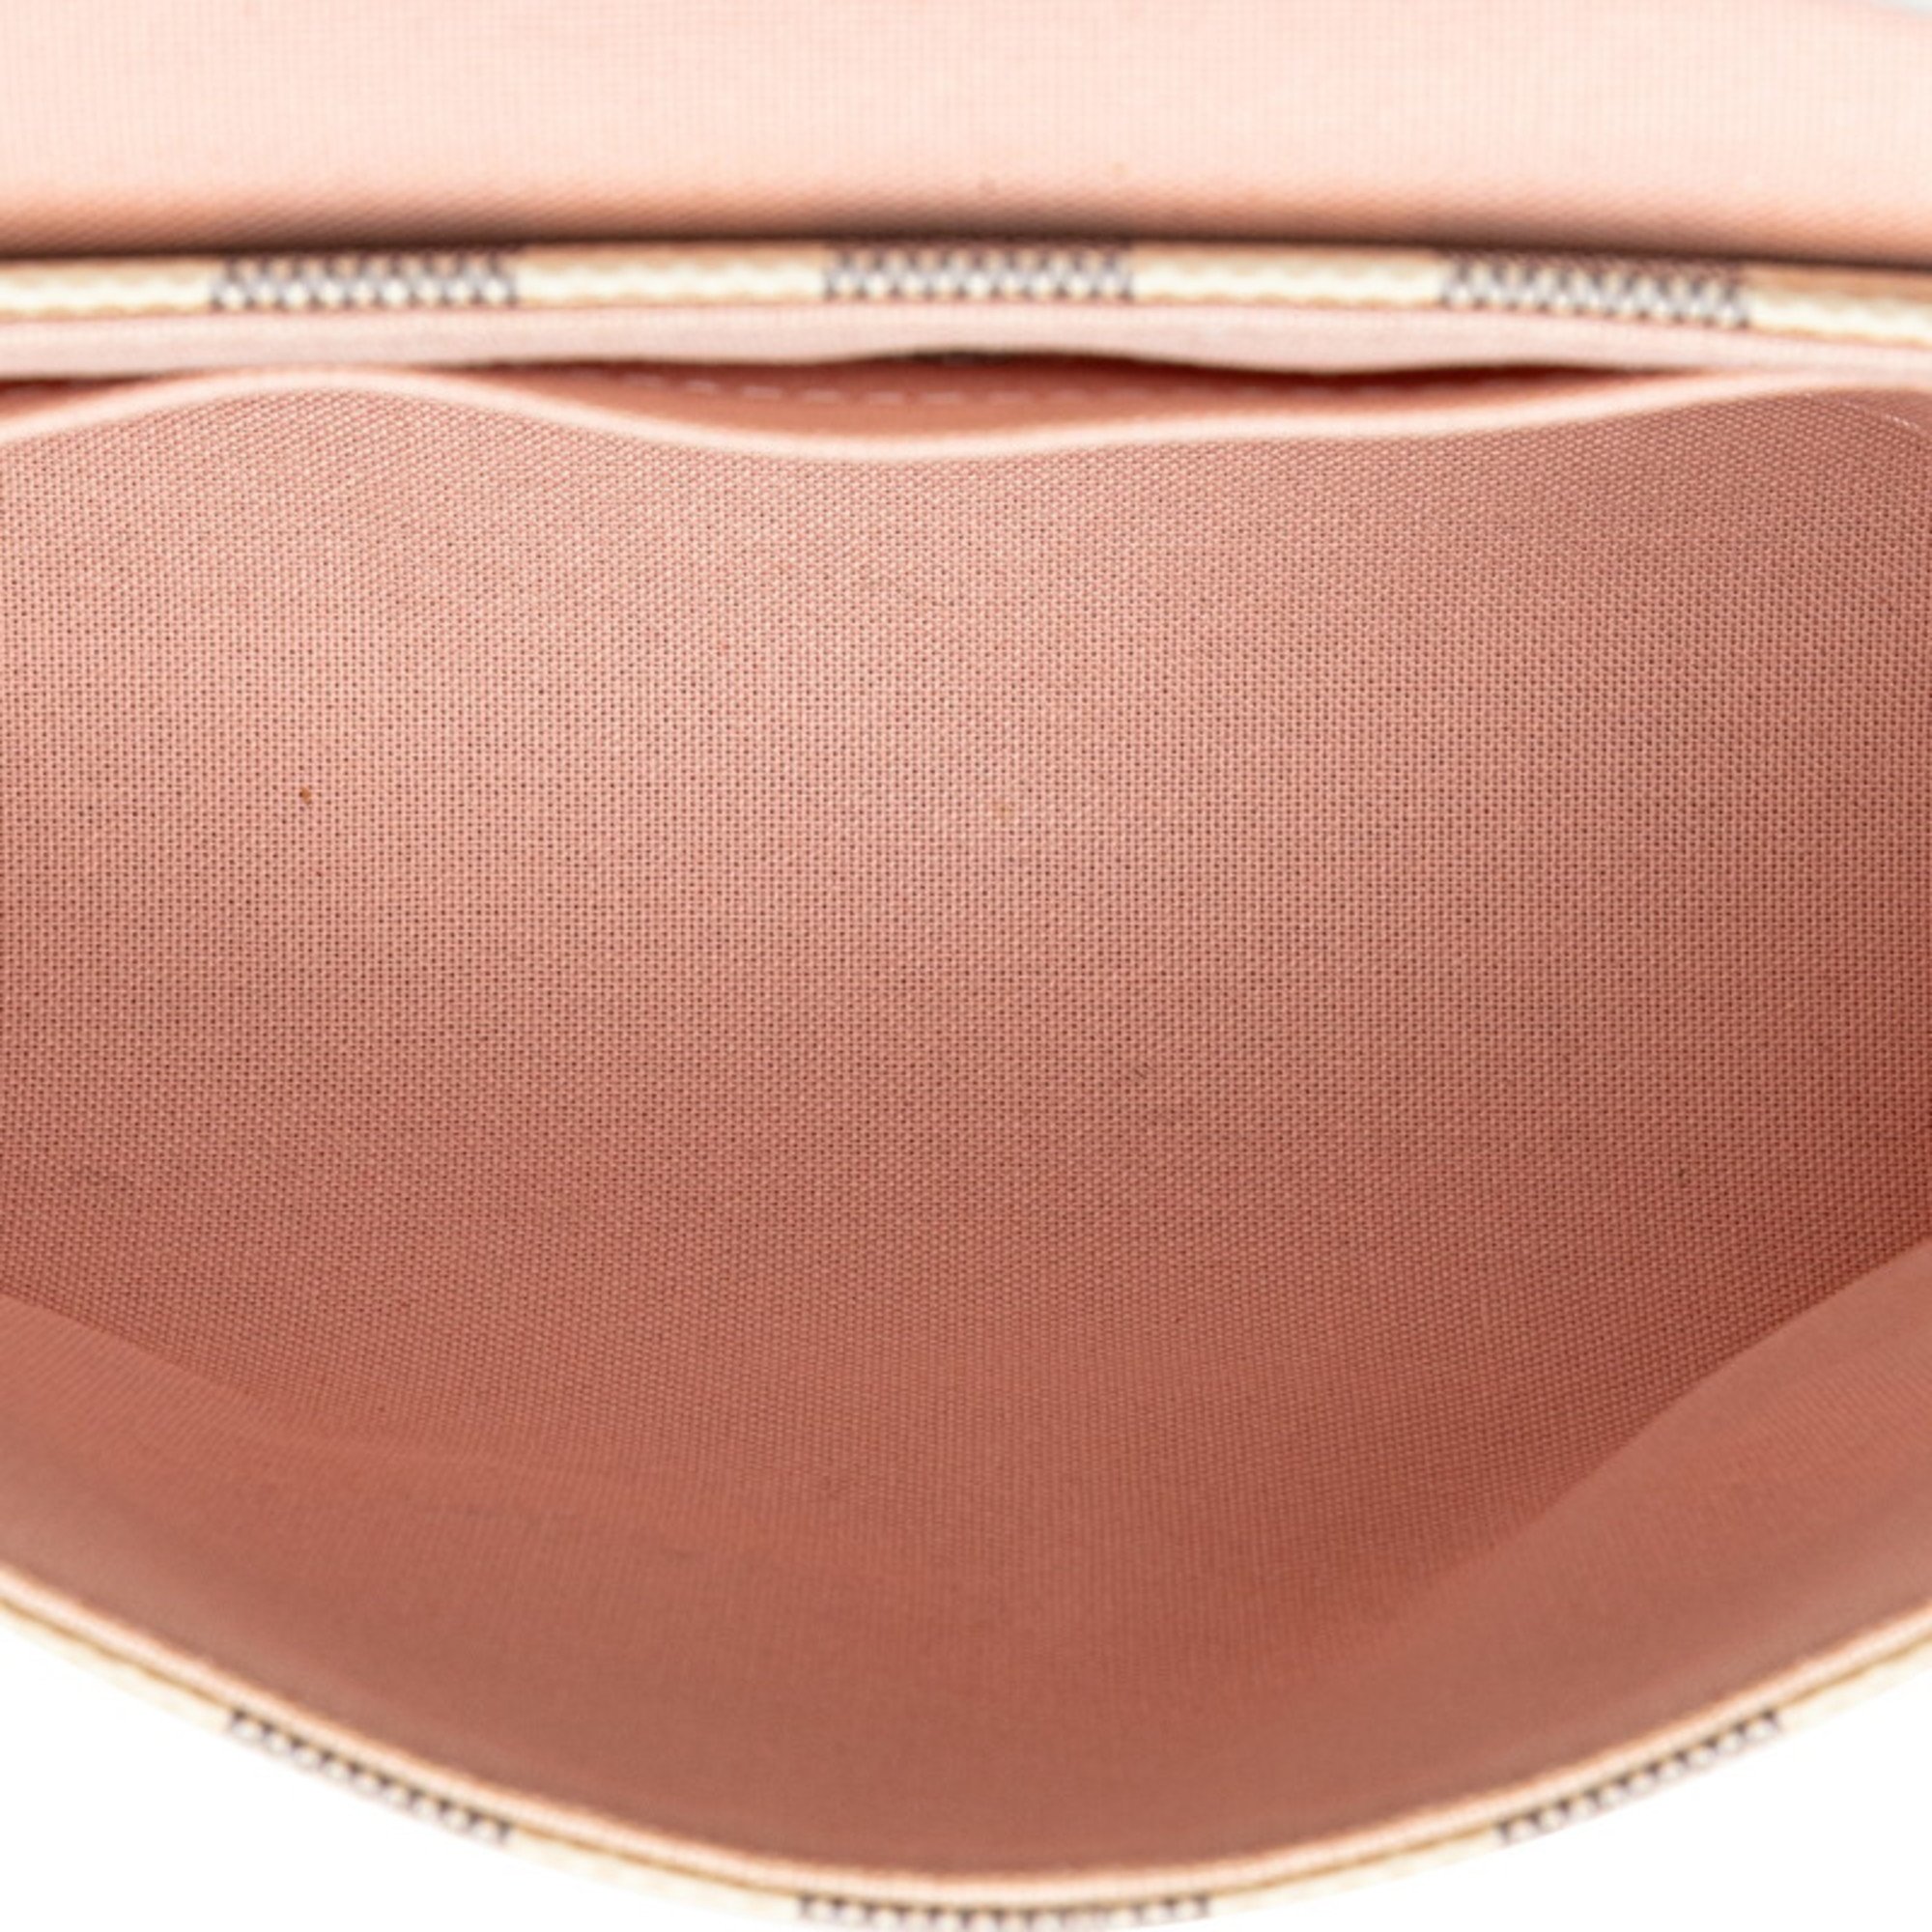 Louis Vuitton Damier Azur Croisette Tassel Handbag Shoulder Bag N41581 White PVC Leather Women's LOUIS VUITTON